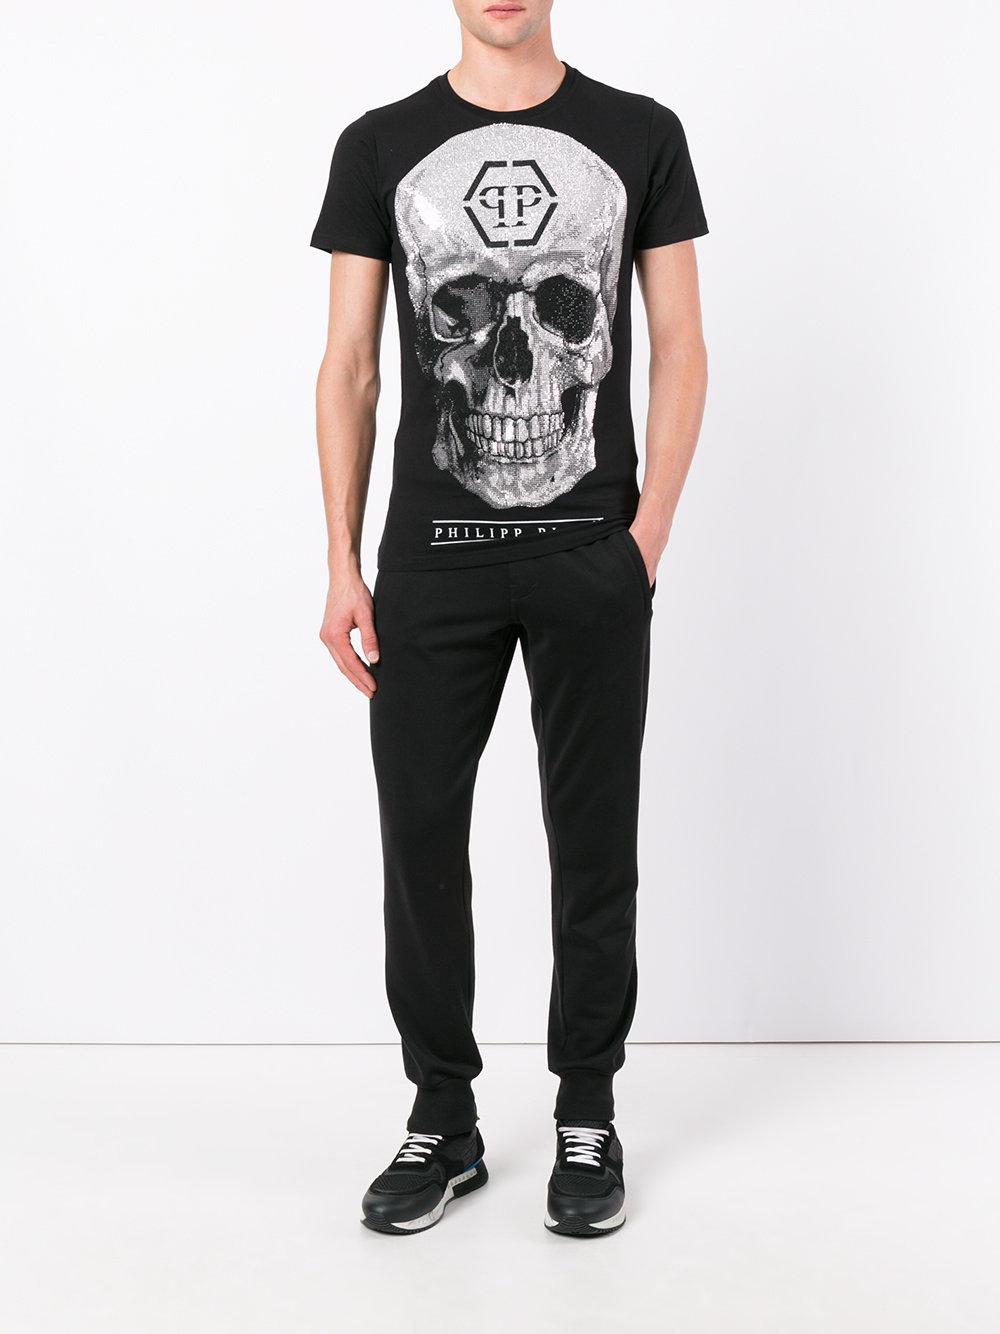 Philipp Plein Cotton Glitter Skull T-shirt in Black for Men - Lyst